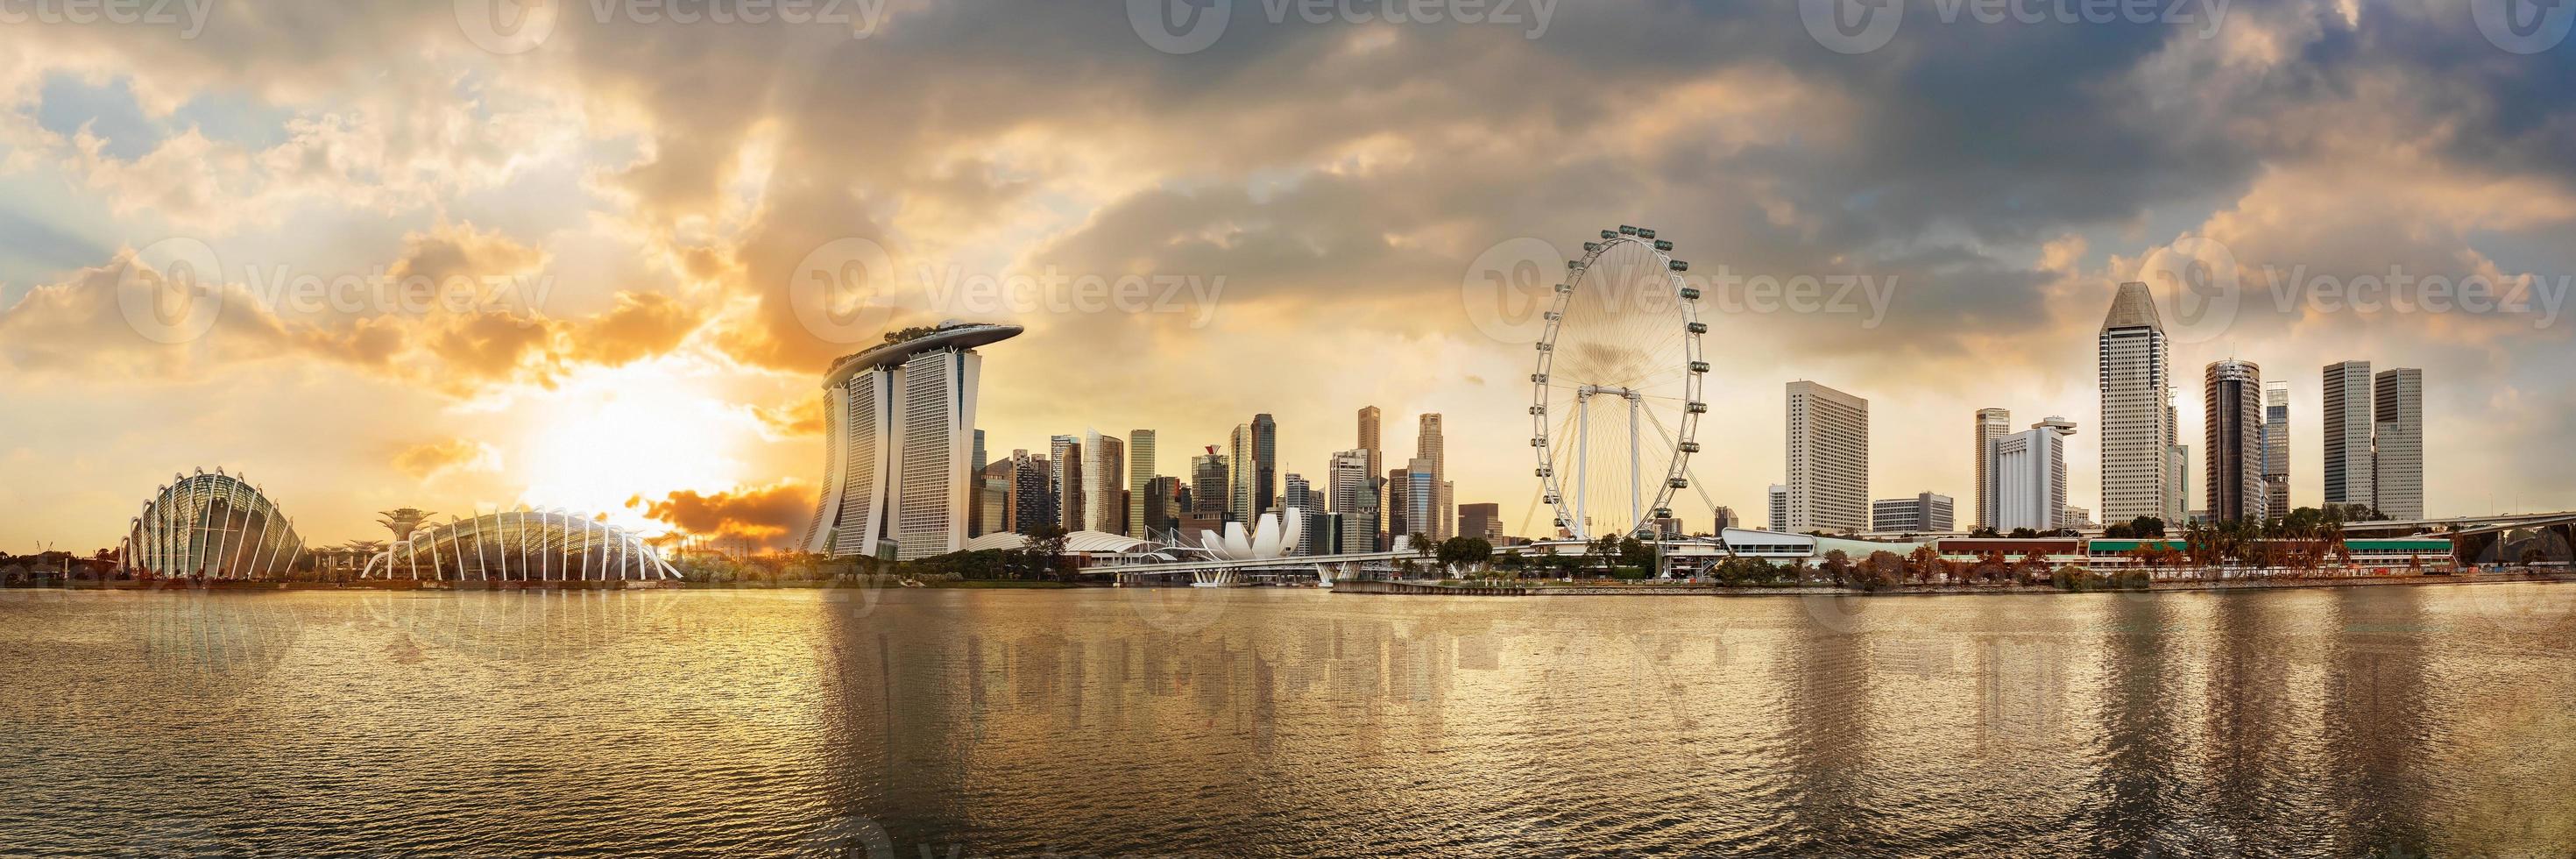 Vue panoramique sur les toits du quartier financier de Singapour à la marina photo